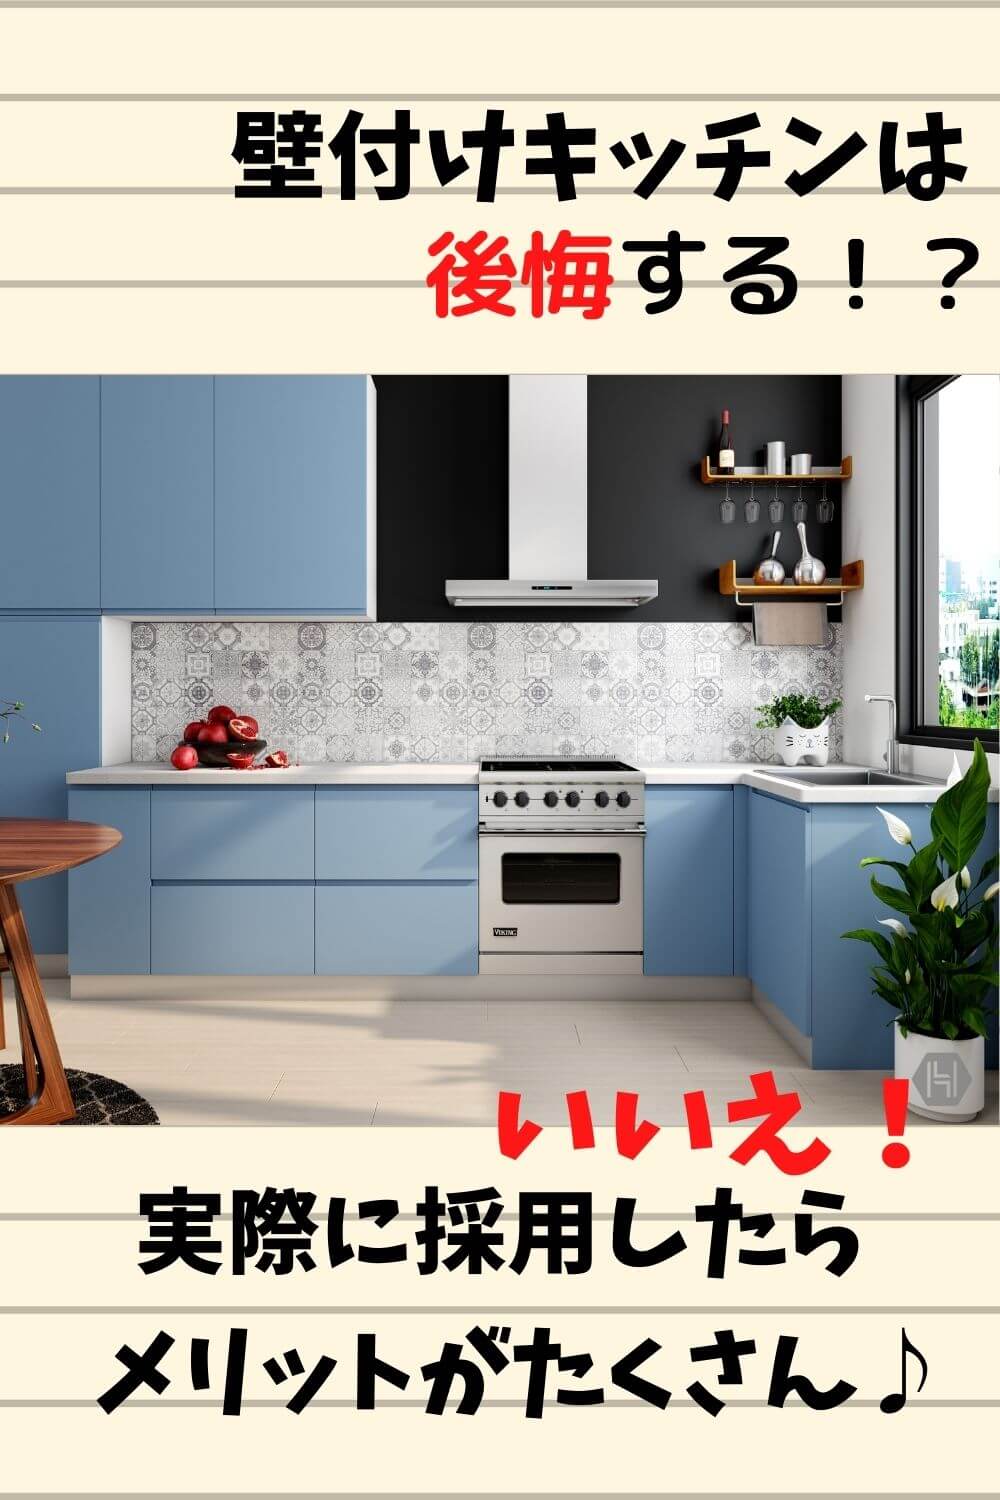 壁付けキッチンは後悔する いいえ おひとりさま暮らしにはメリットがいっぱいです 札幌のローコスト住宅 おすすめ業者の比較と口コミナビ